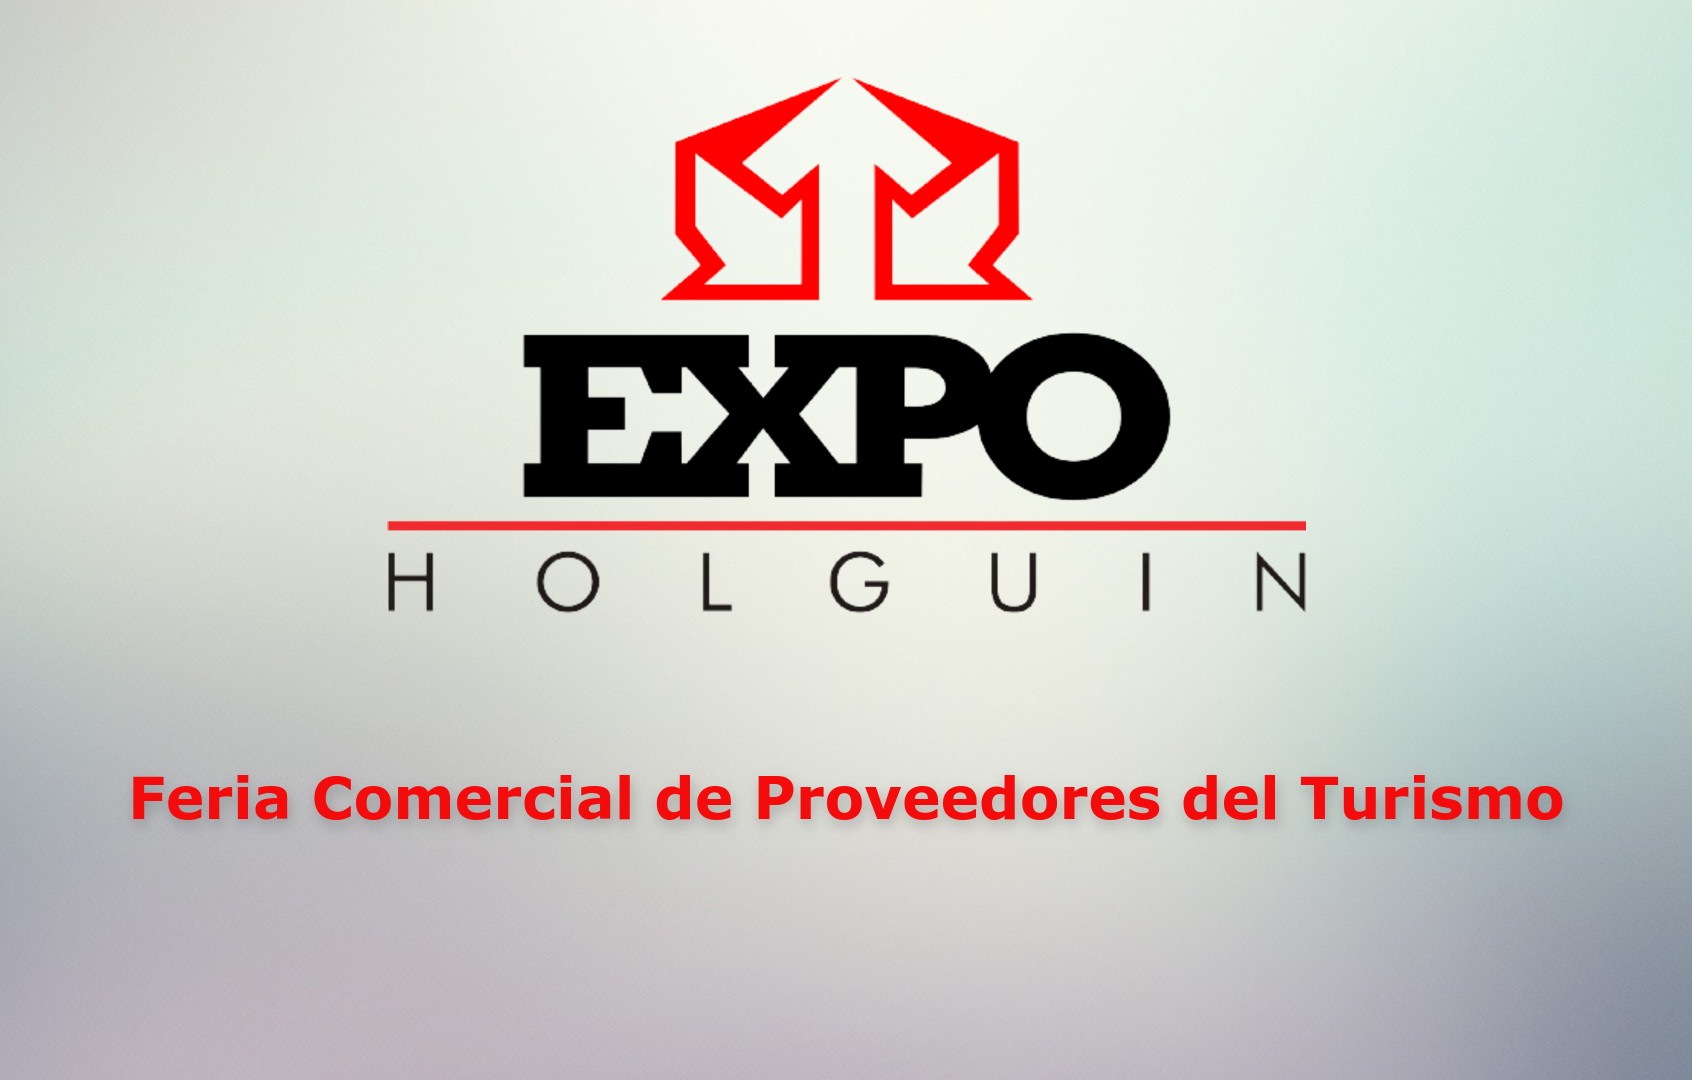 Feria Comercial de Proveedores del Turismo Holguín